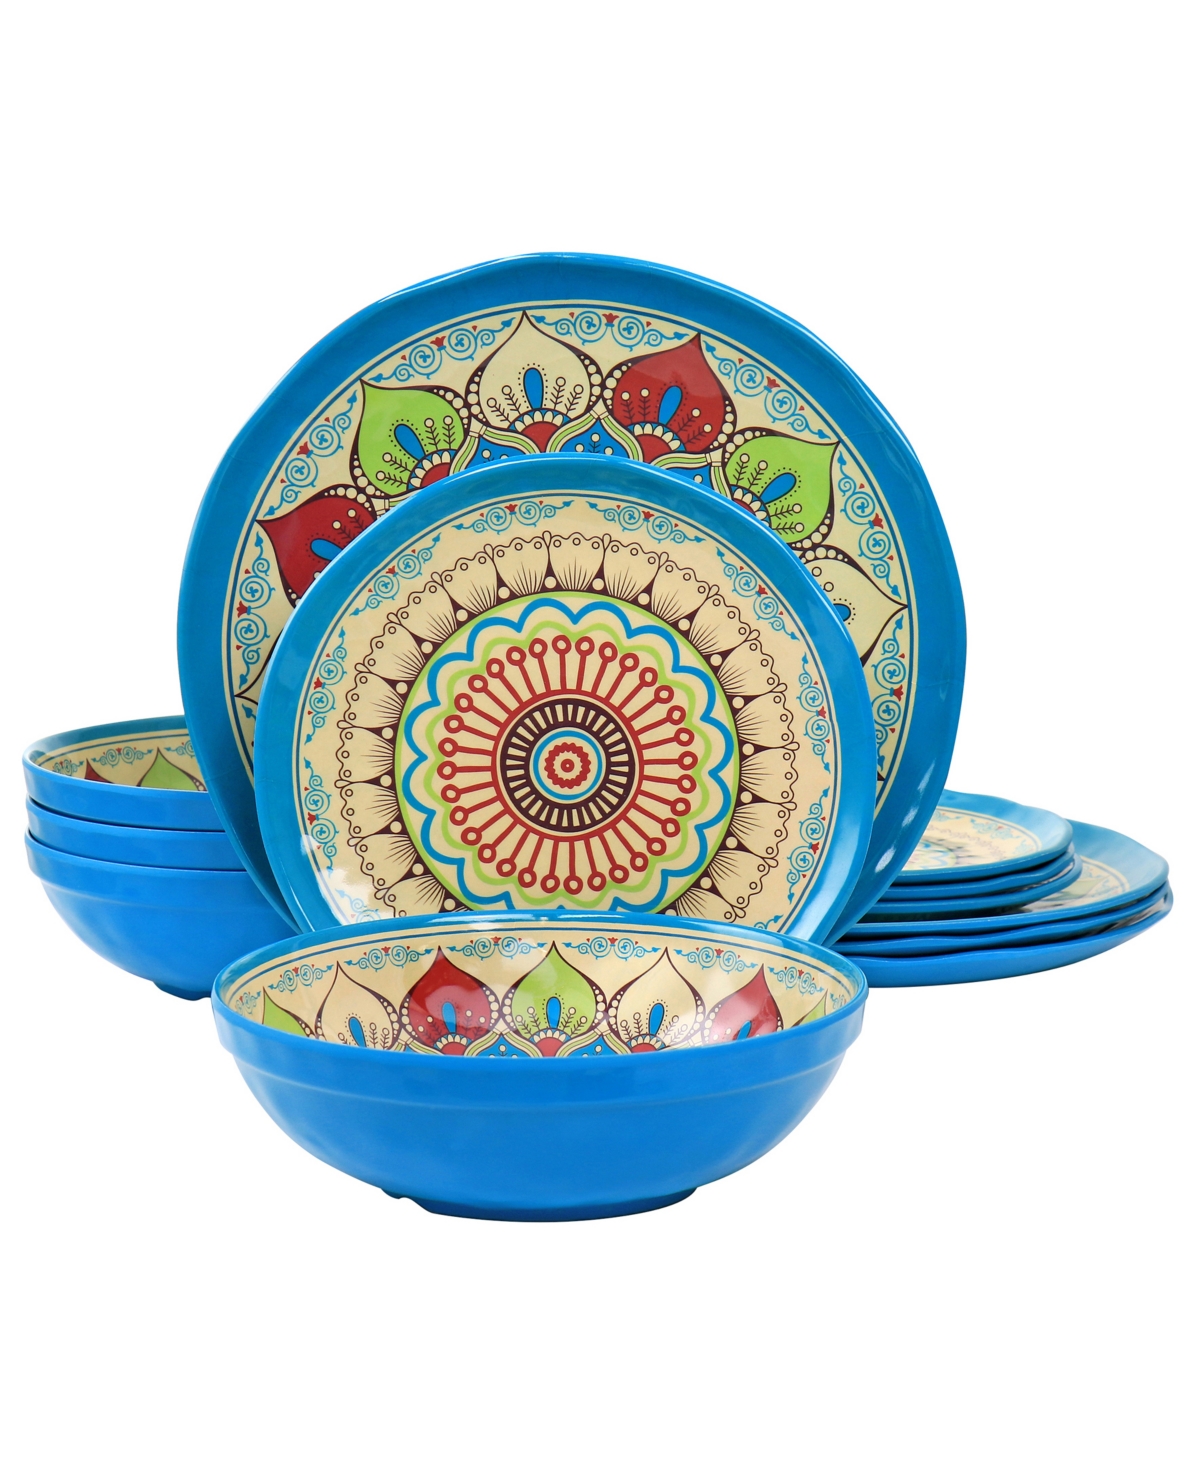 Mandala Micaela 12 Piece Melamine Dinnerware Set, Service for 4 - Multi-Color